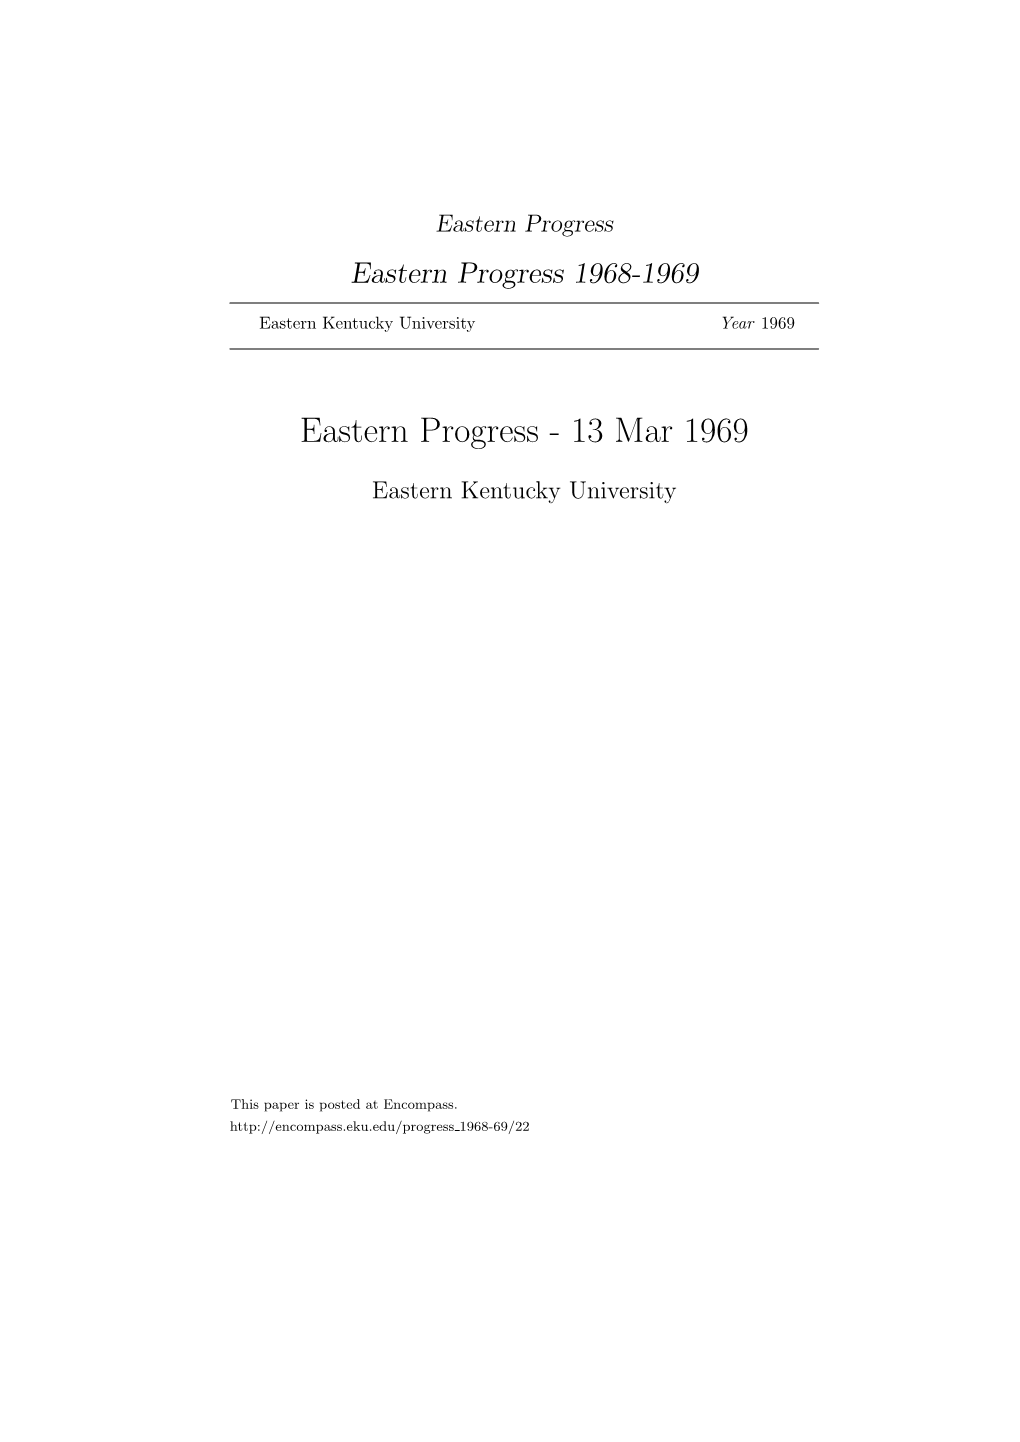 Eastern Progress Eastern Progress 1968-1969